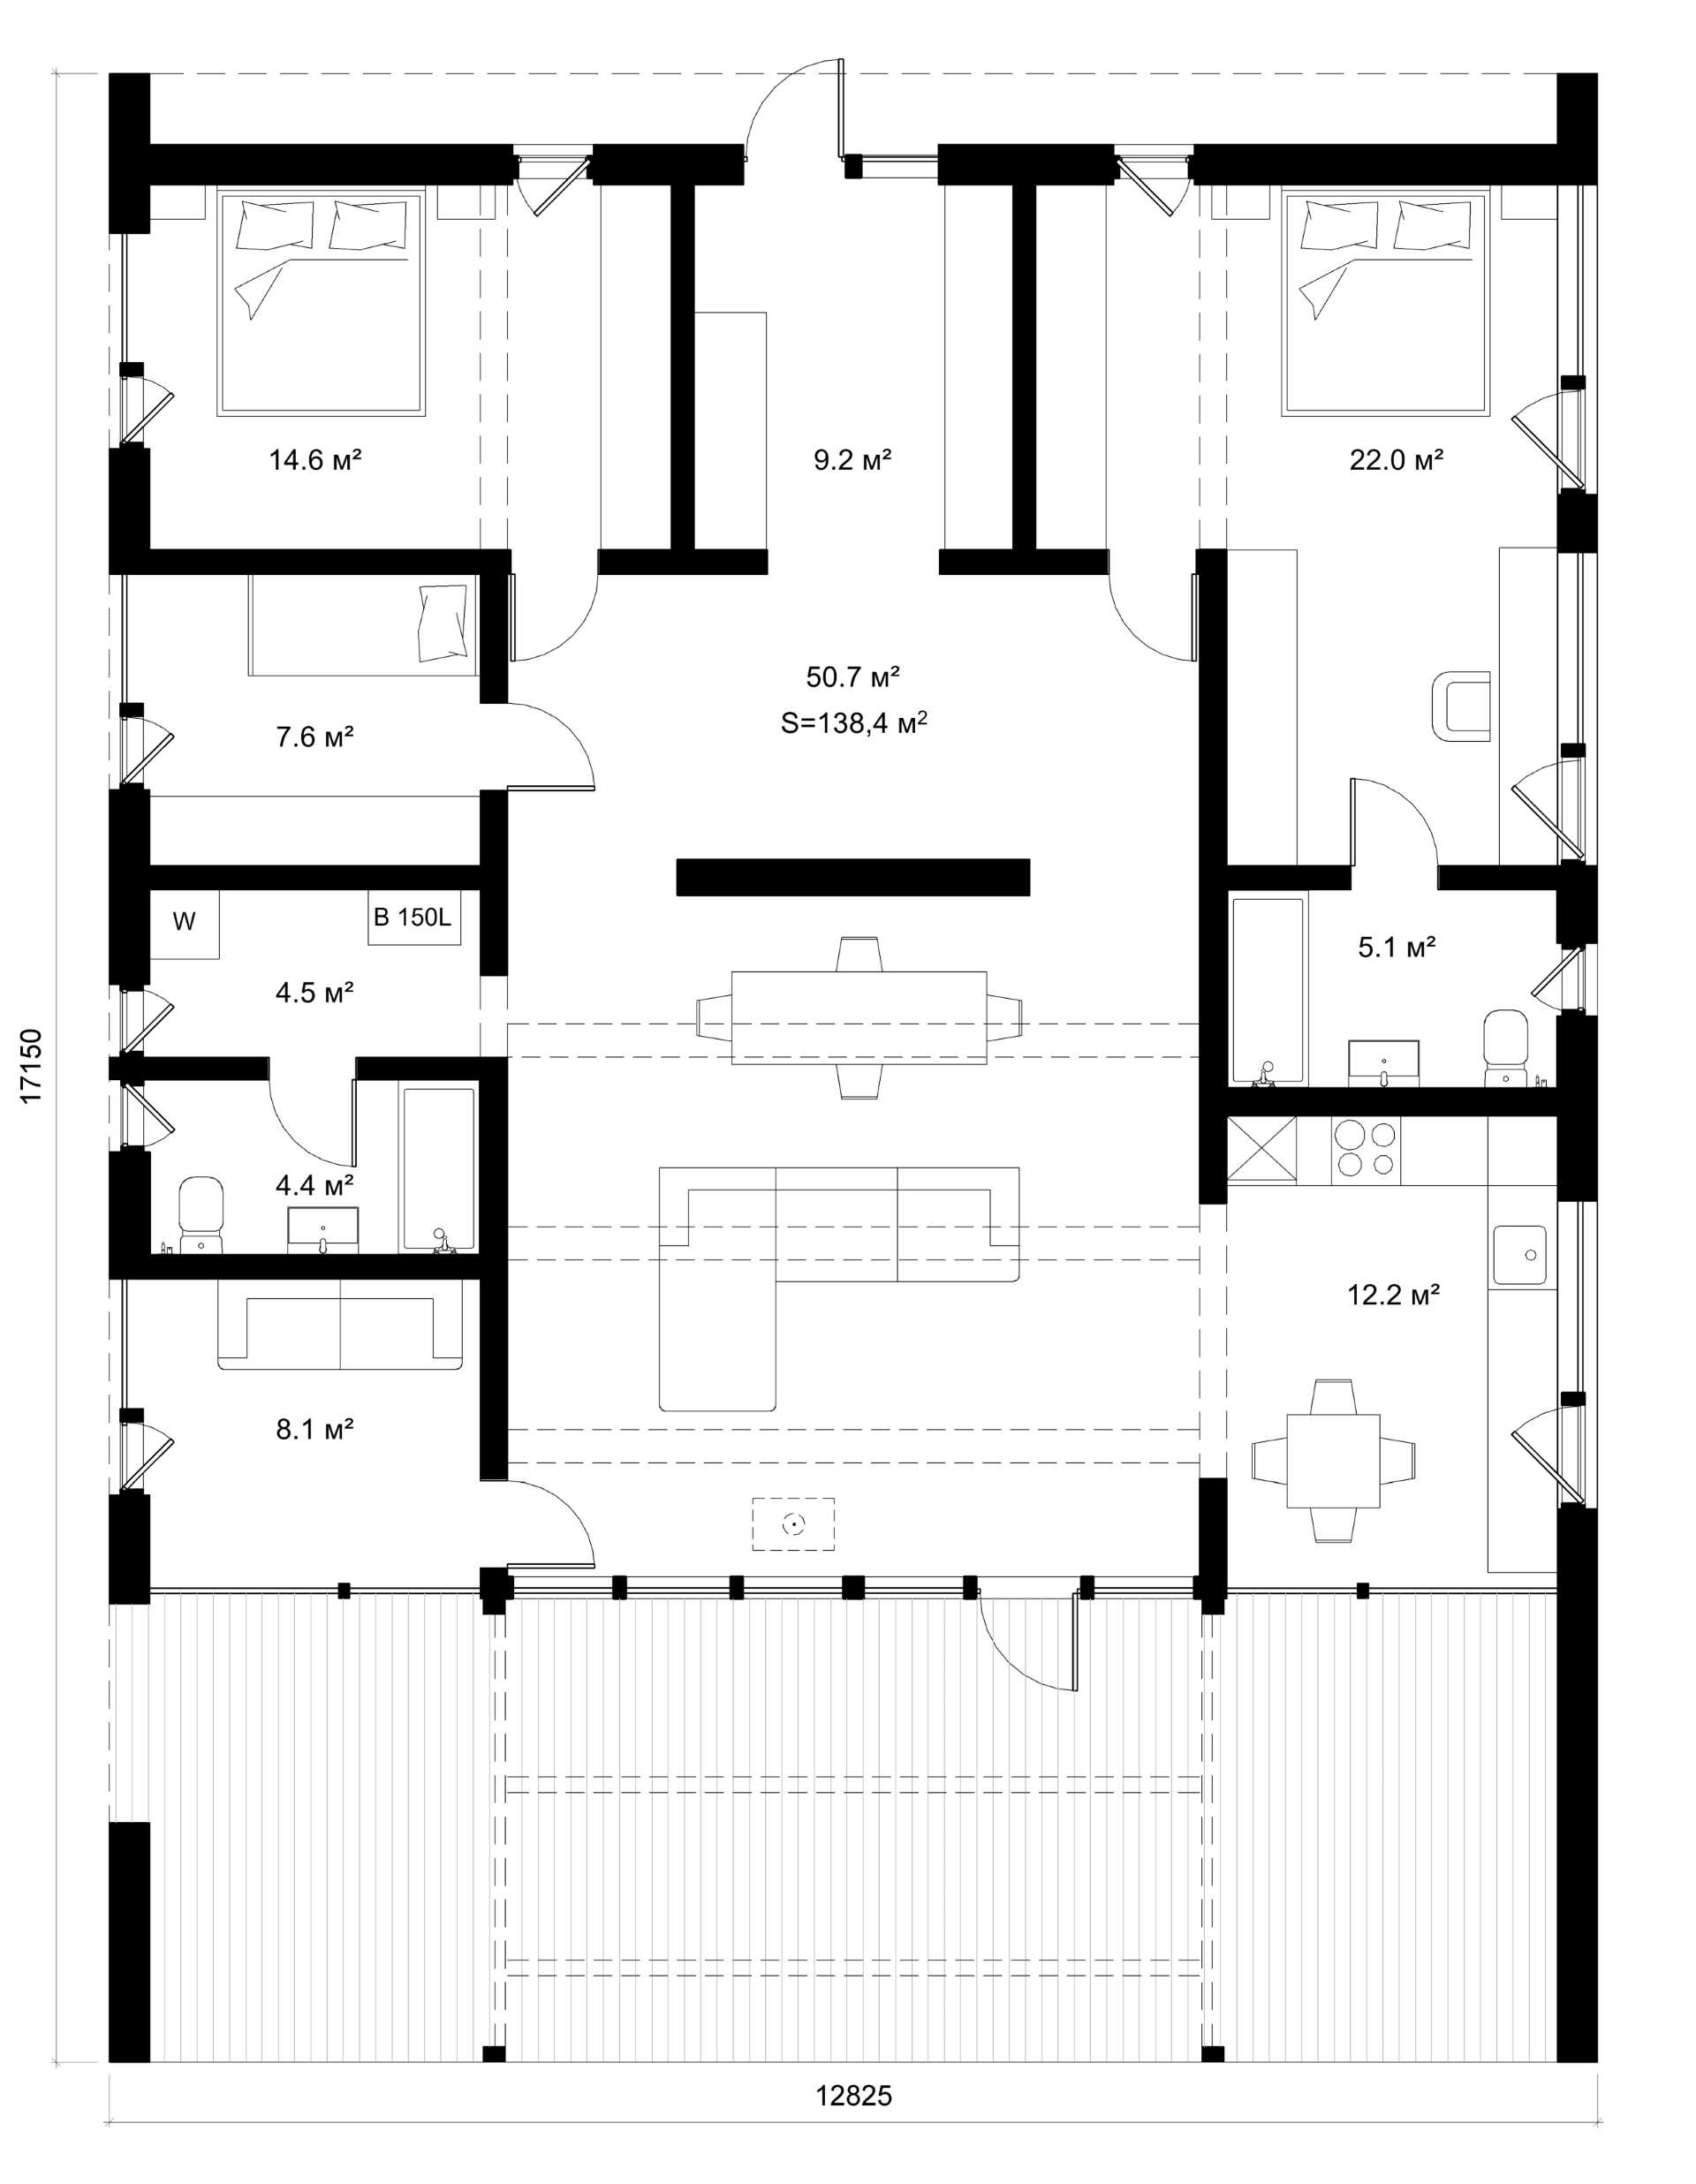 The floor plan of a modular home.